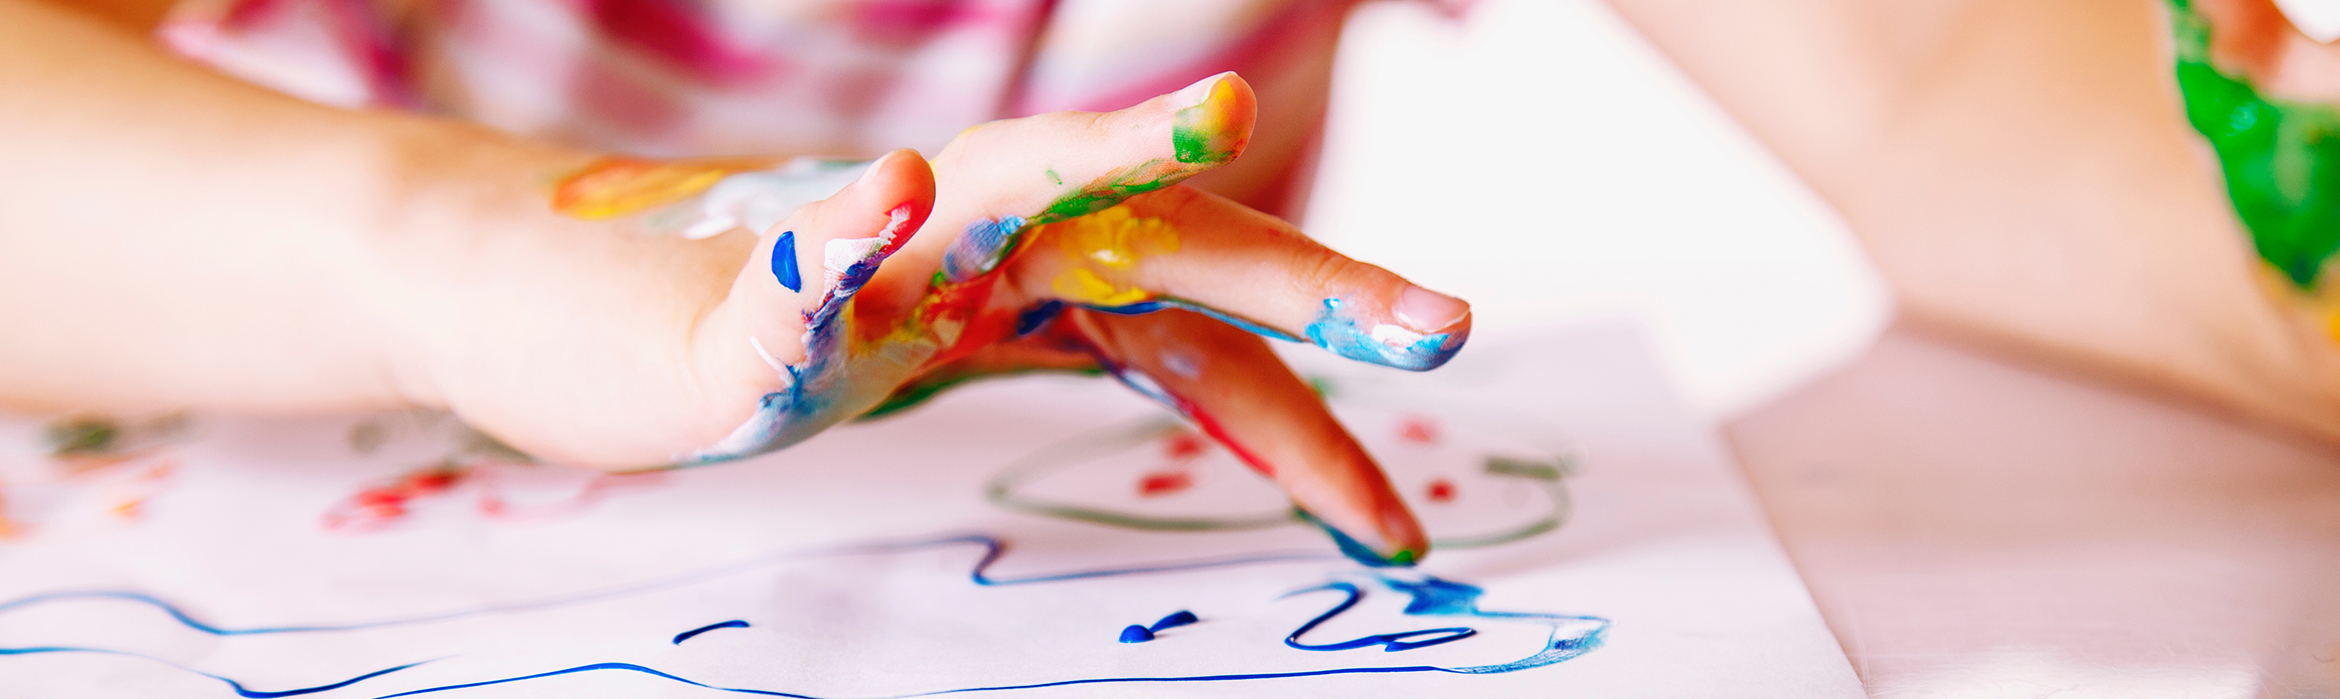 manos de niño pintando libre